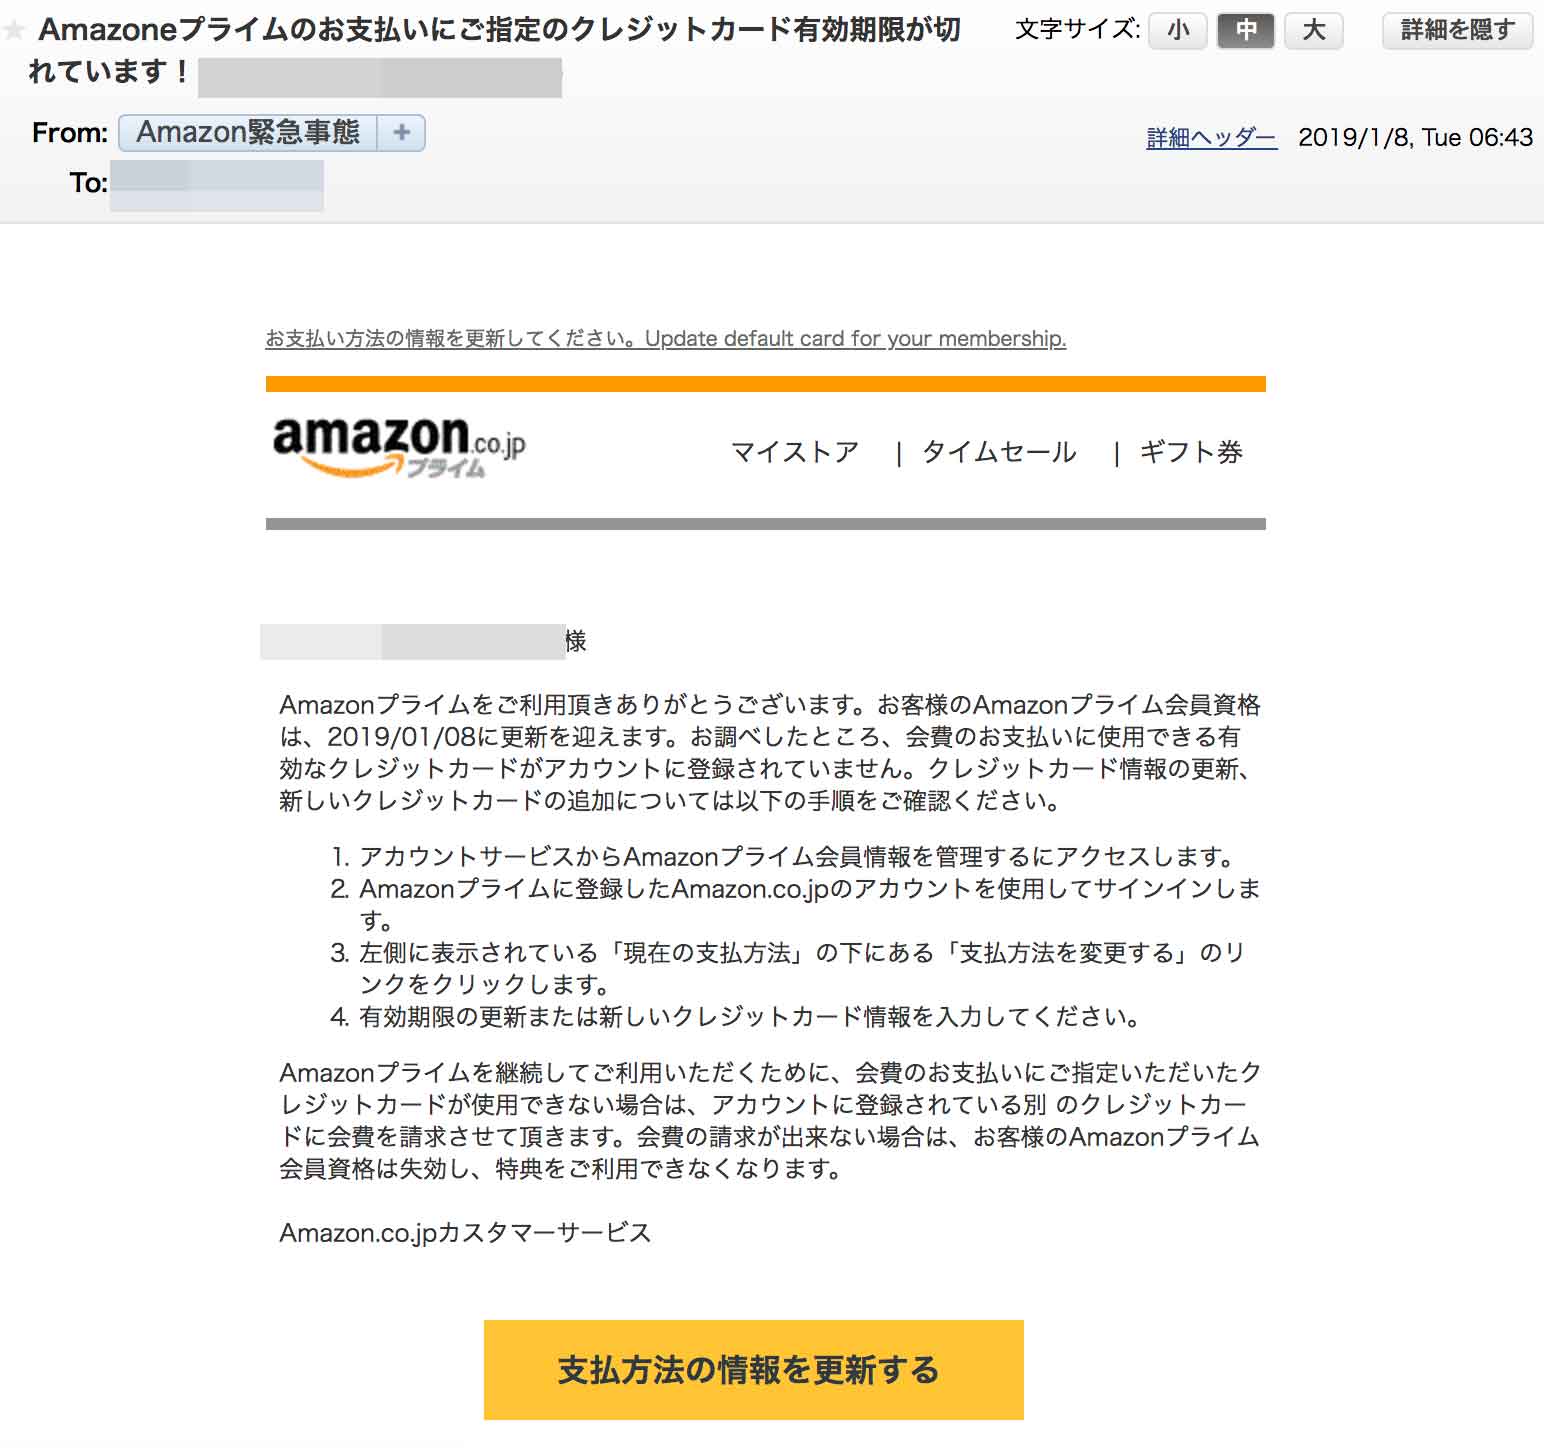 Amazon緊急事態 Appleサポート詐欺メールに注意 カード情報 Id入力はng